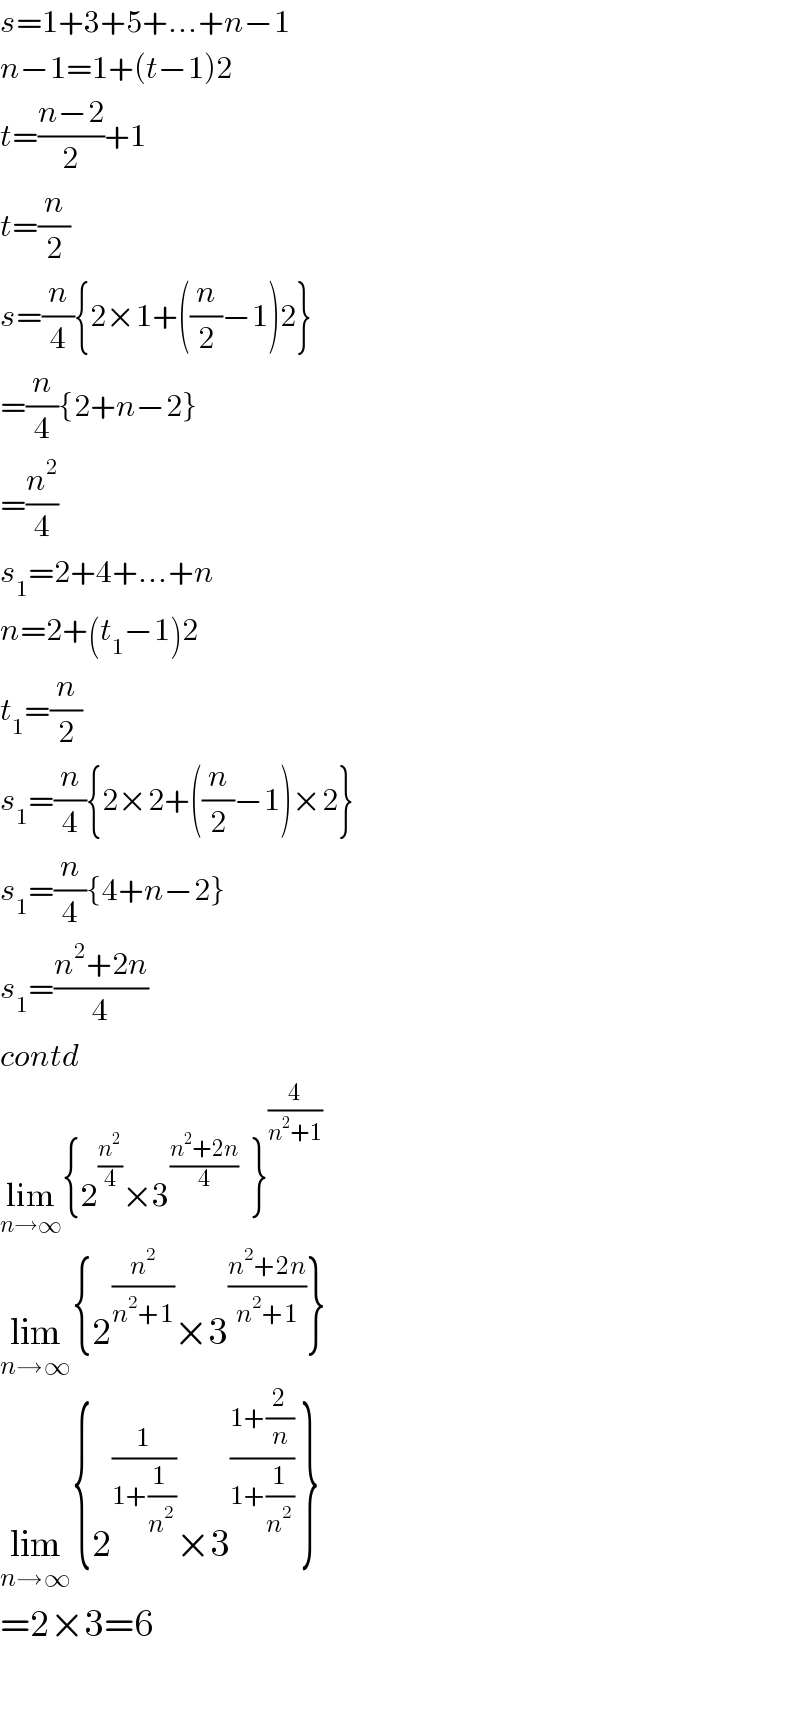 s=1+3+5+...+n−1  n−1=1+(t−1)2  t=((n−2)/2)+1  t=(n/2)  s=(n/4){2×1+((n/2)−1)2}  =(n/4){2+n−2}  =(n^2 /4)  s_1 =2+4+...+n  n=2+(t_1 −1)2  t_1 =(n/2)  s_1 =(n/4){2×2+((n/2)−1)×2}  s_1 =(n/4){4+n−2}  s_1 =((n^2 +2n)/4)  contd  lim_(n→∞) {2^(n^2 /4) ×3^((n^2 +2n)/4)   }^(4/(n^2 +1))   lim_(n→∞) {2^(n^2 /(n^2 +1)) ×3^((n^2 +2n)/(n^2 +1)) }  lim_(n→∞) {2^(1/(1+((1 )/n^2 ))) ×3^((1+(2/n))/(1+(1/n^2 )))  }  =2×3=6    